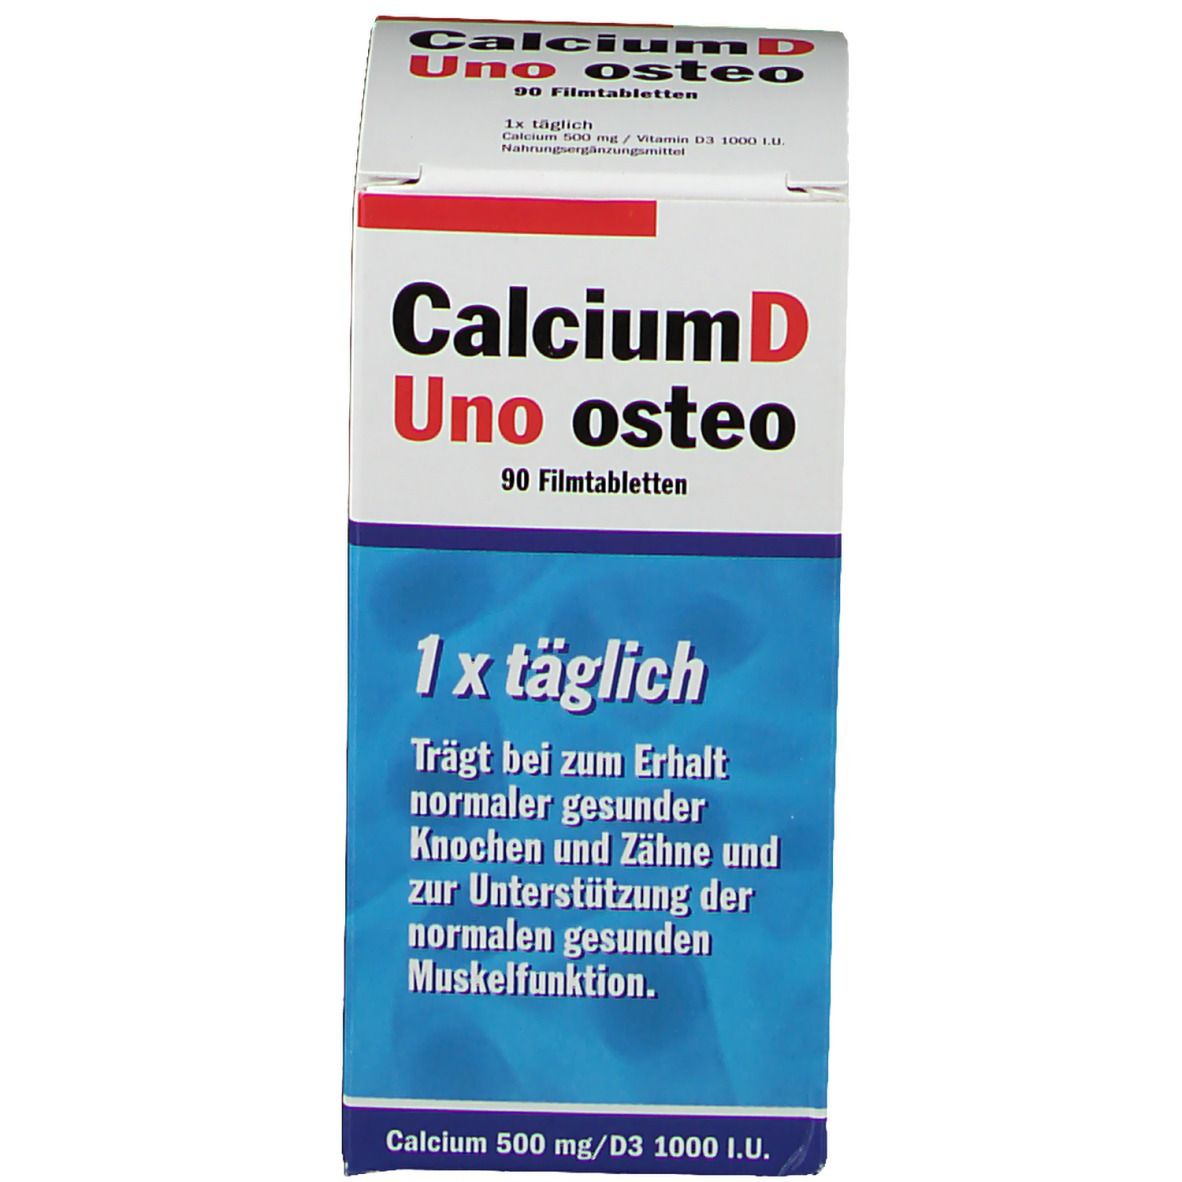 CalciumD Uno osteo